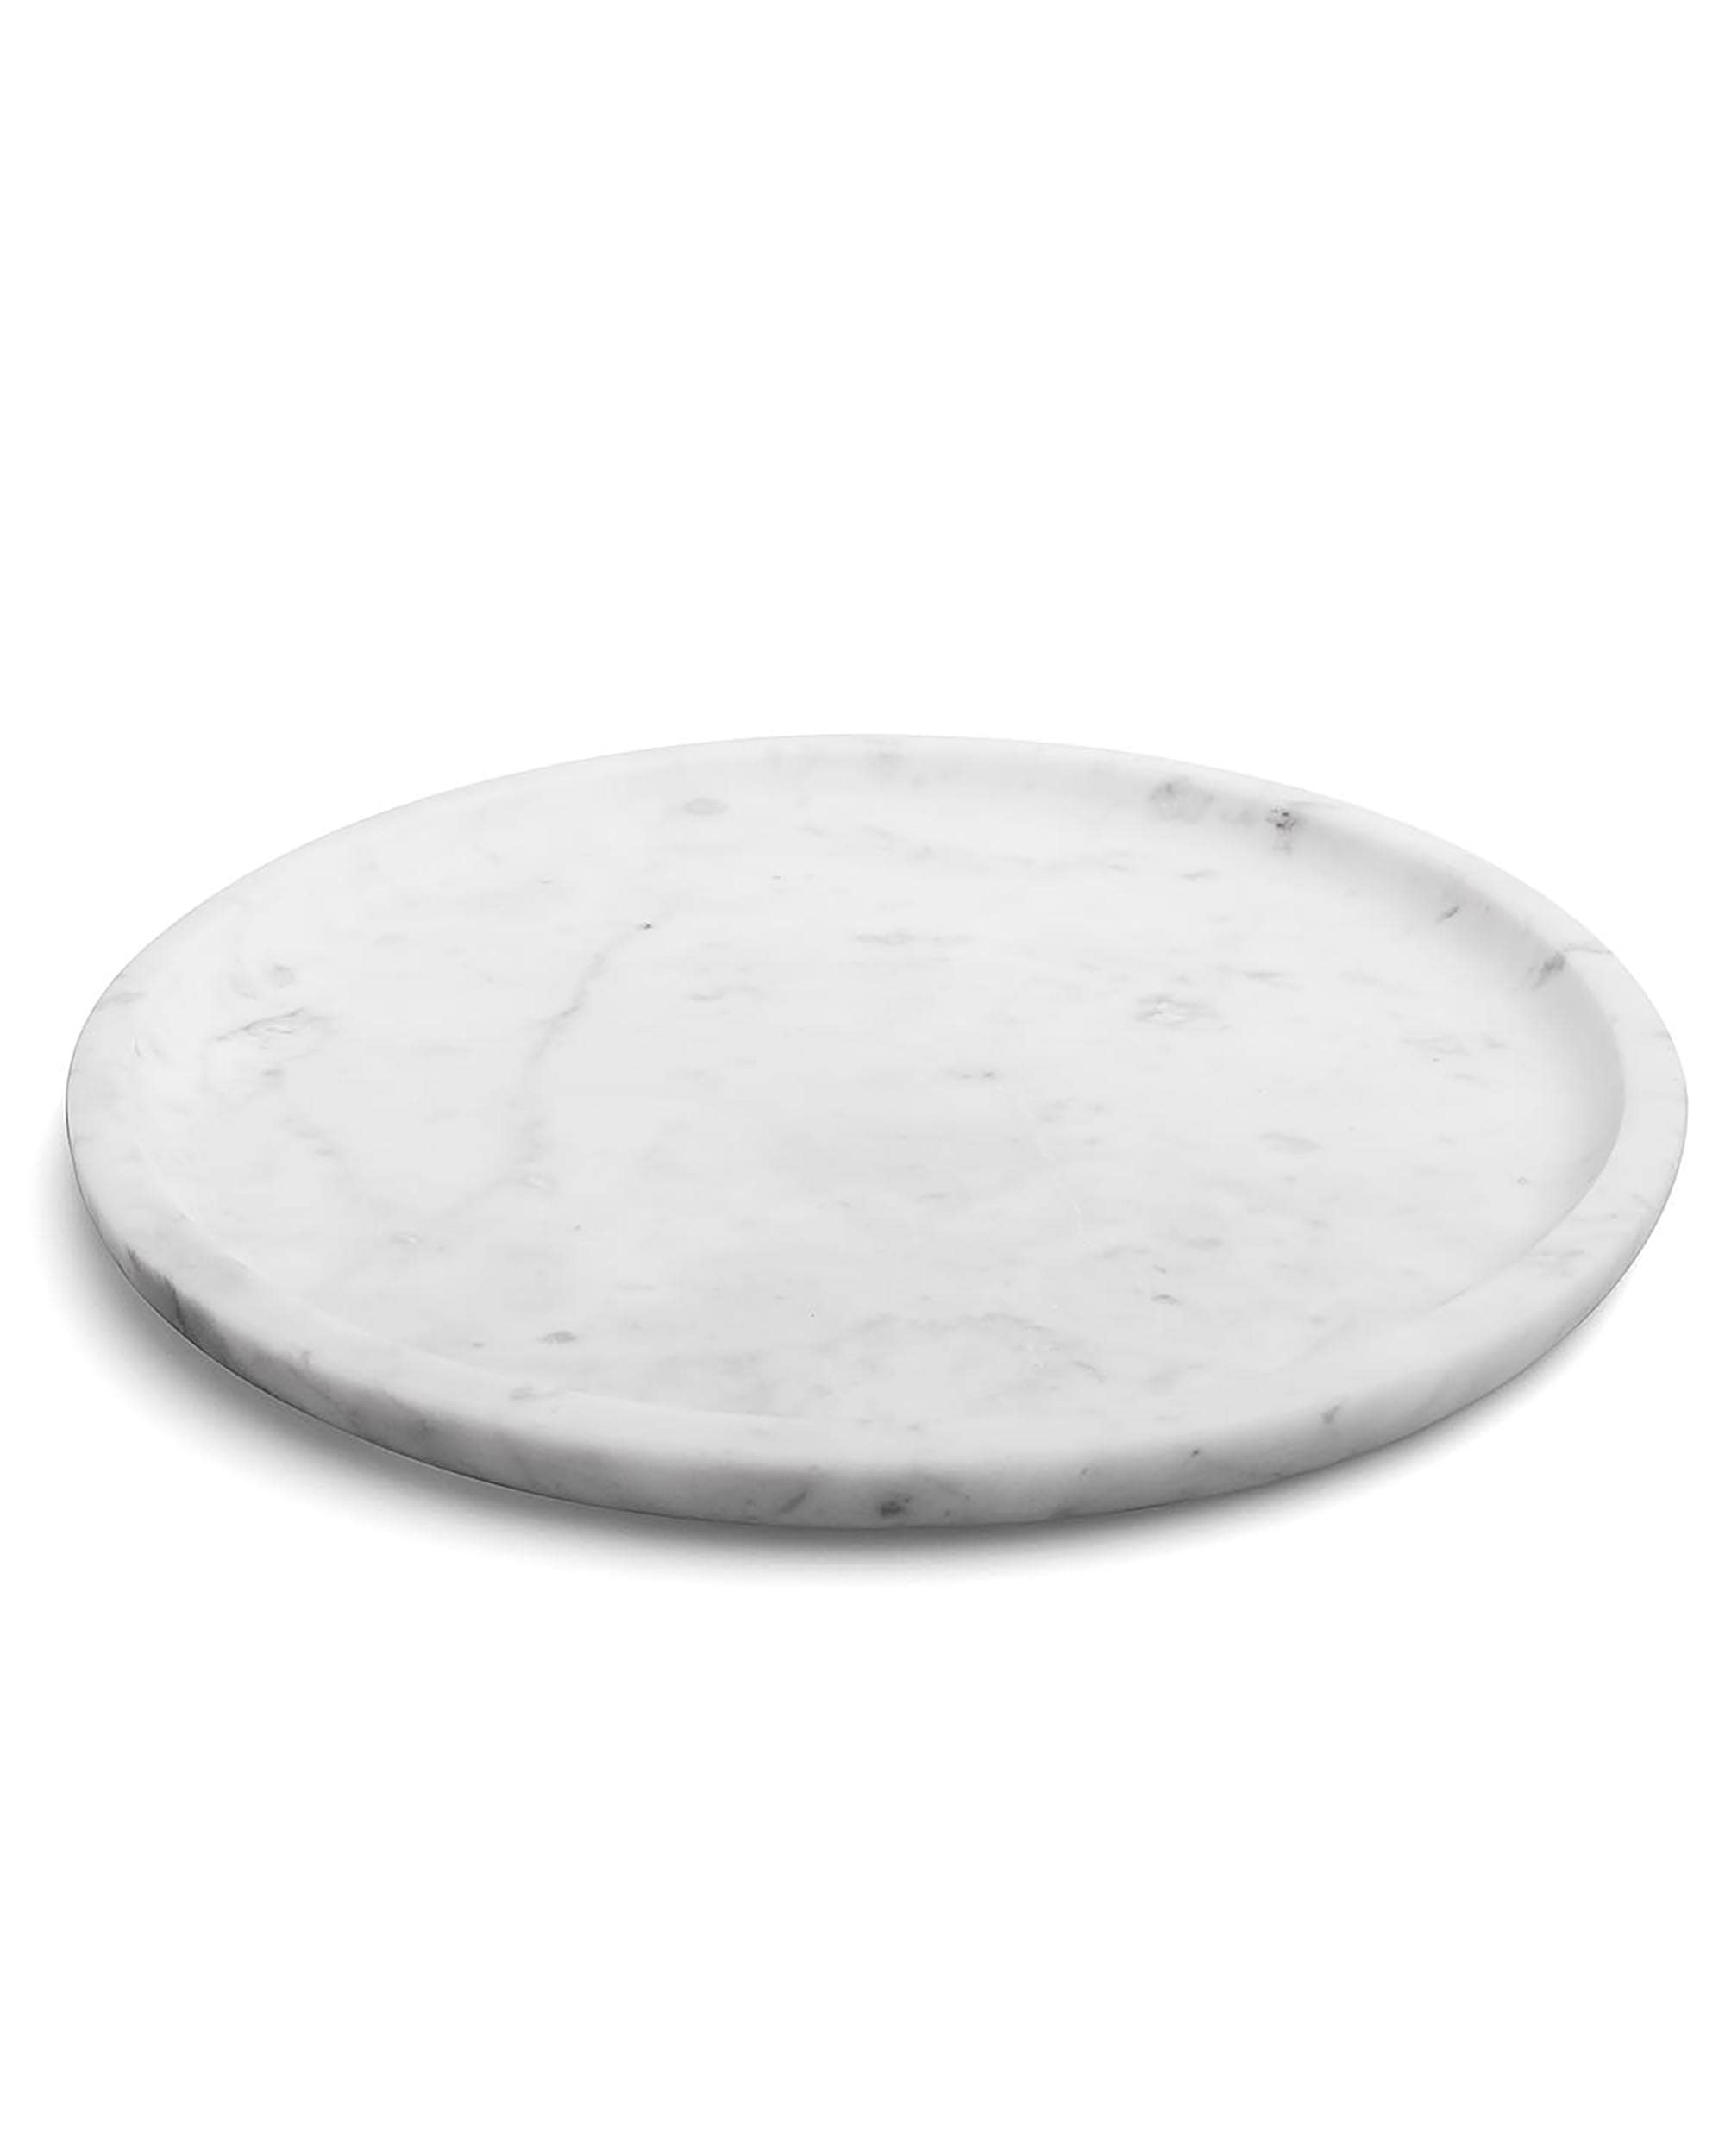 Lasciami stare - Design plate in white Carrara marble 28cm.